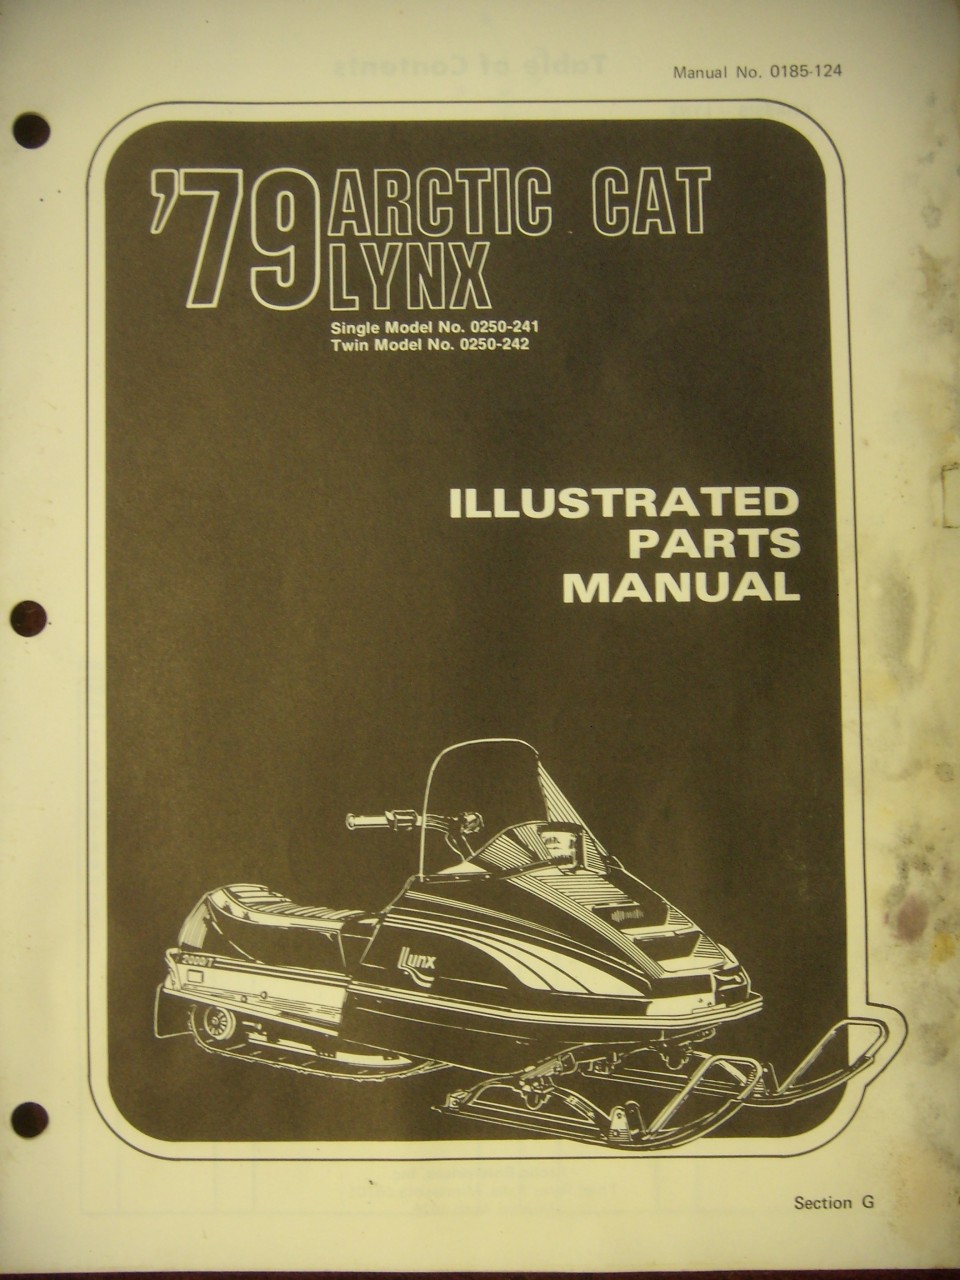 1979 Lynx Parts Manual - Arctic Restorations